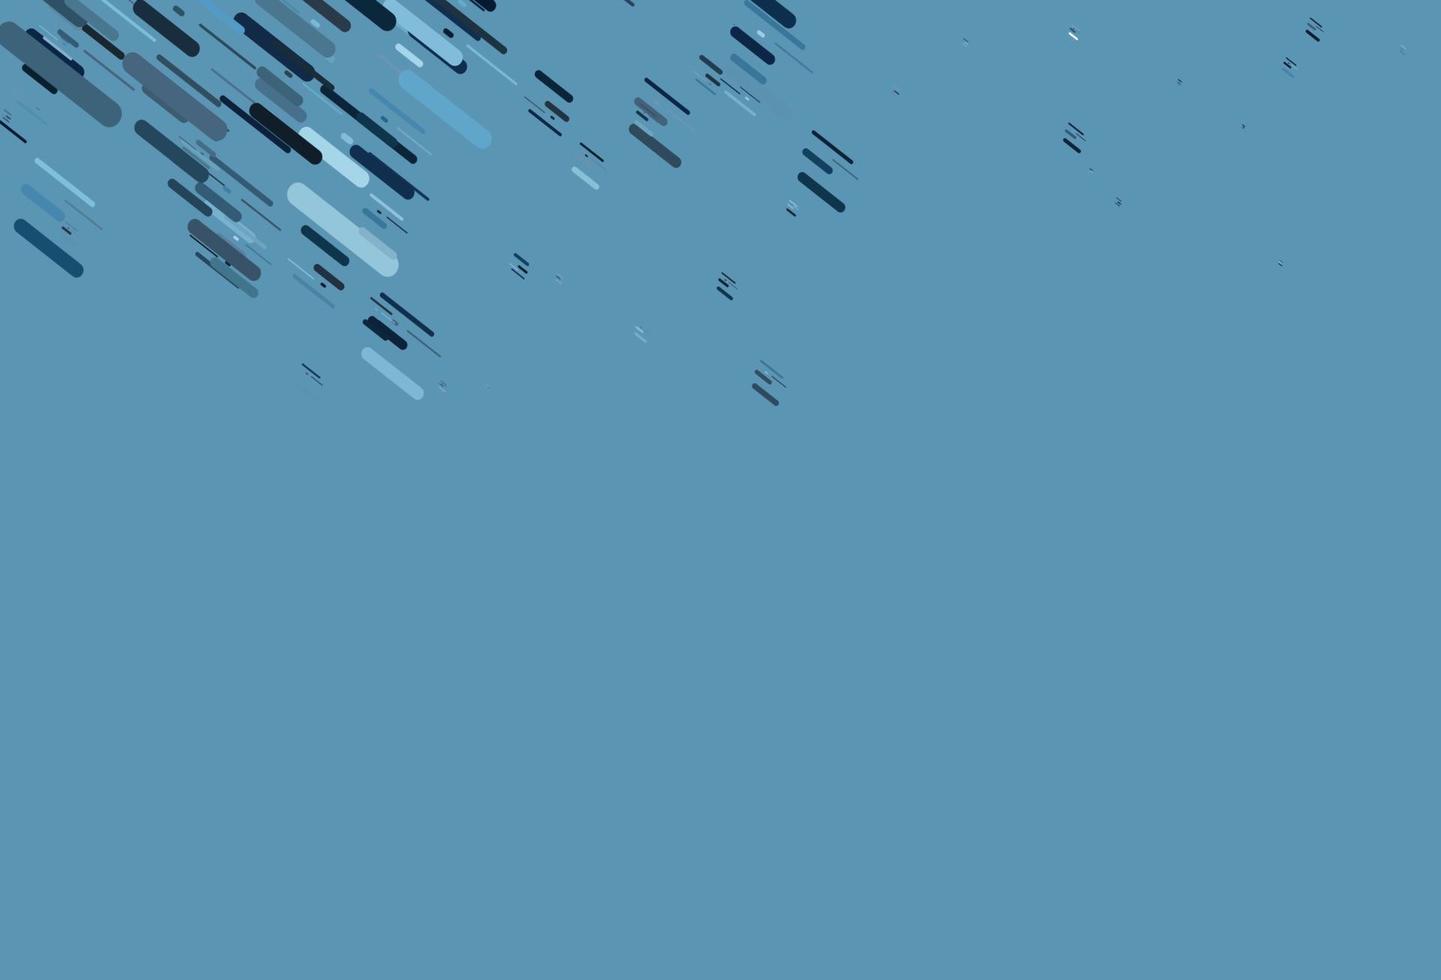 modelo de vetor azul claro com varas repetidas.